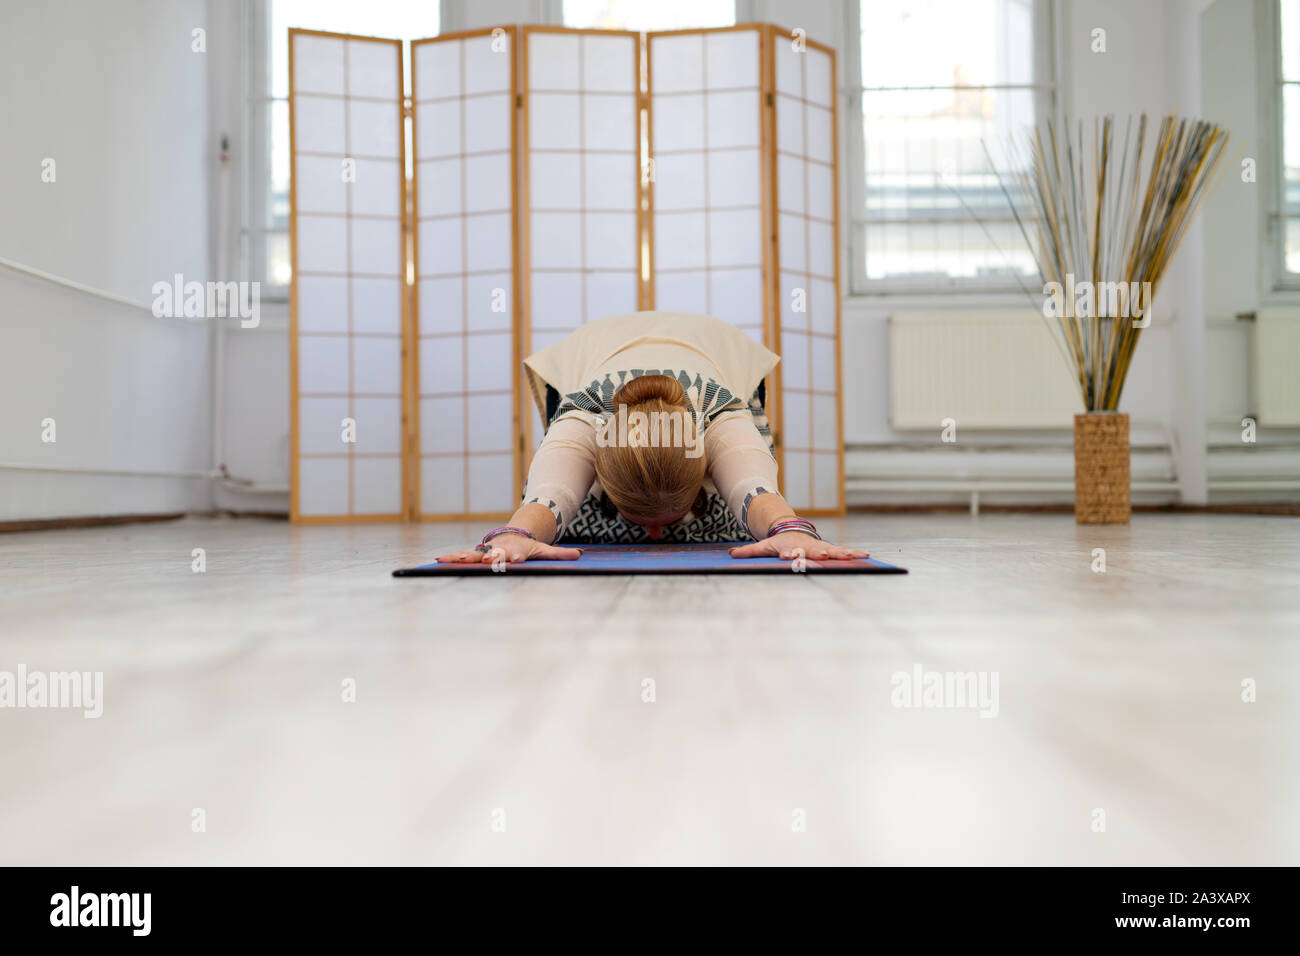 Lo yoga,donna durante la pratica dello yoga, donna nella meditazione, donna in posizione di yoga Foto Stock